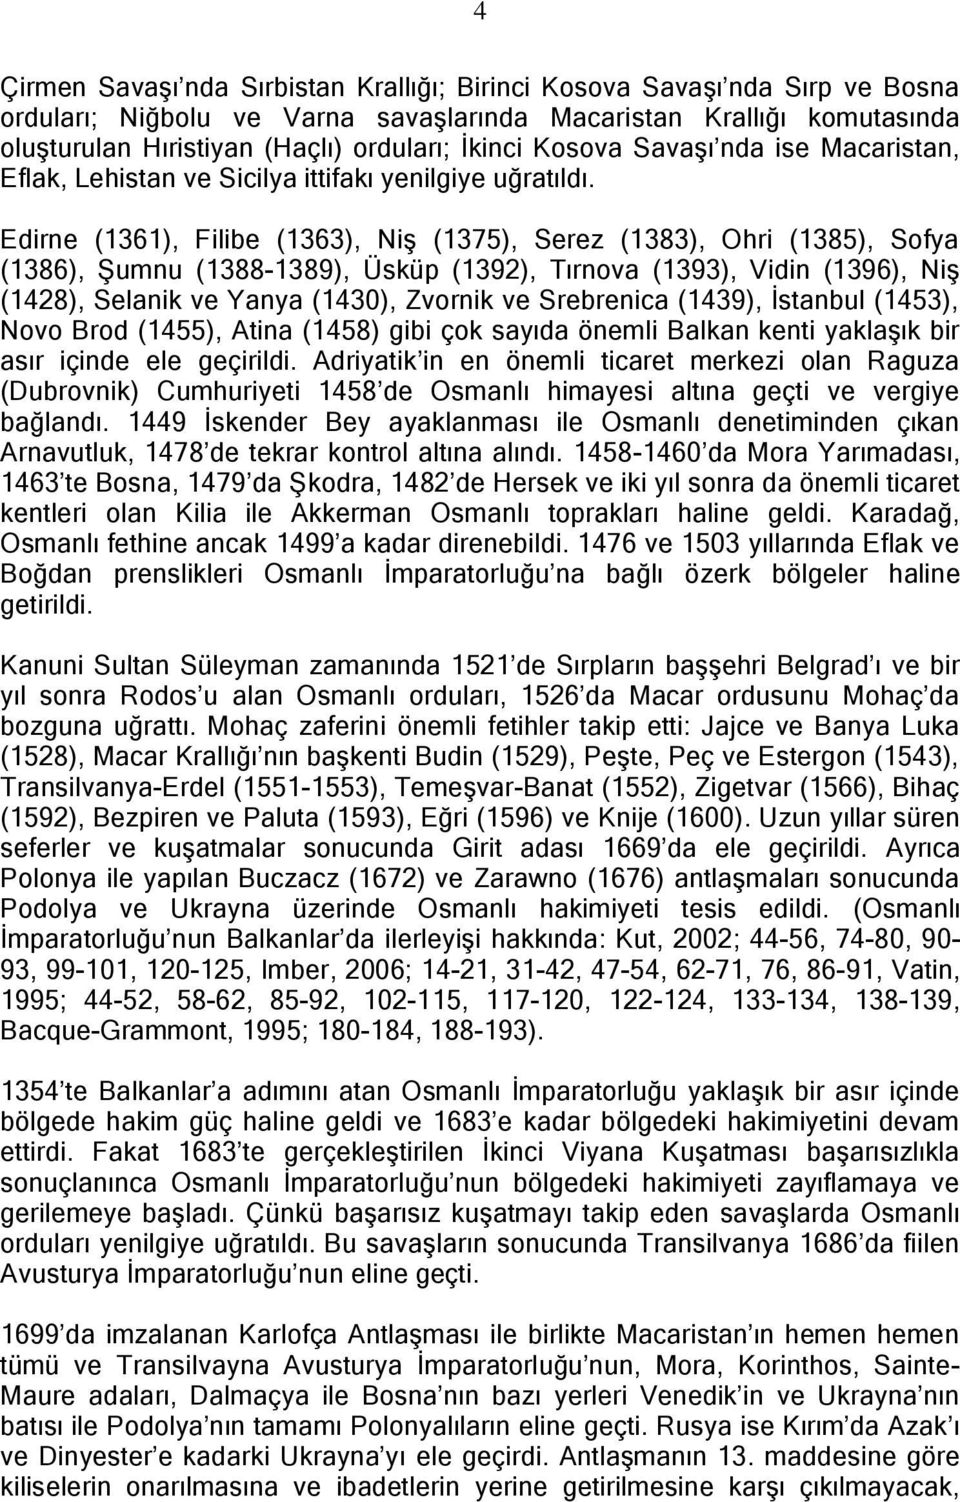 Edirne (1361), Filibe (1363), Niş (1375), Serez (1383), Ohri (1385), Sofya (1386), Şumnu (1388-1389), Üsküp (1392), Tırnova (1393), Vidin (1396), Niş (1428), Selanik ve Yanya (1430), Zvornik ve